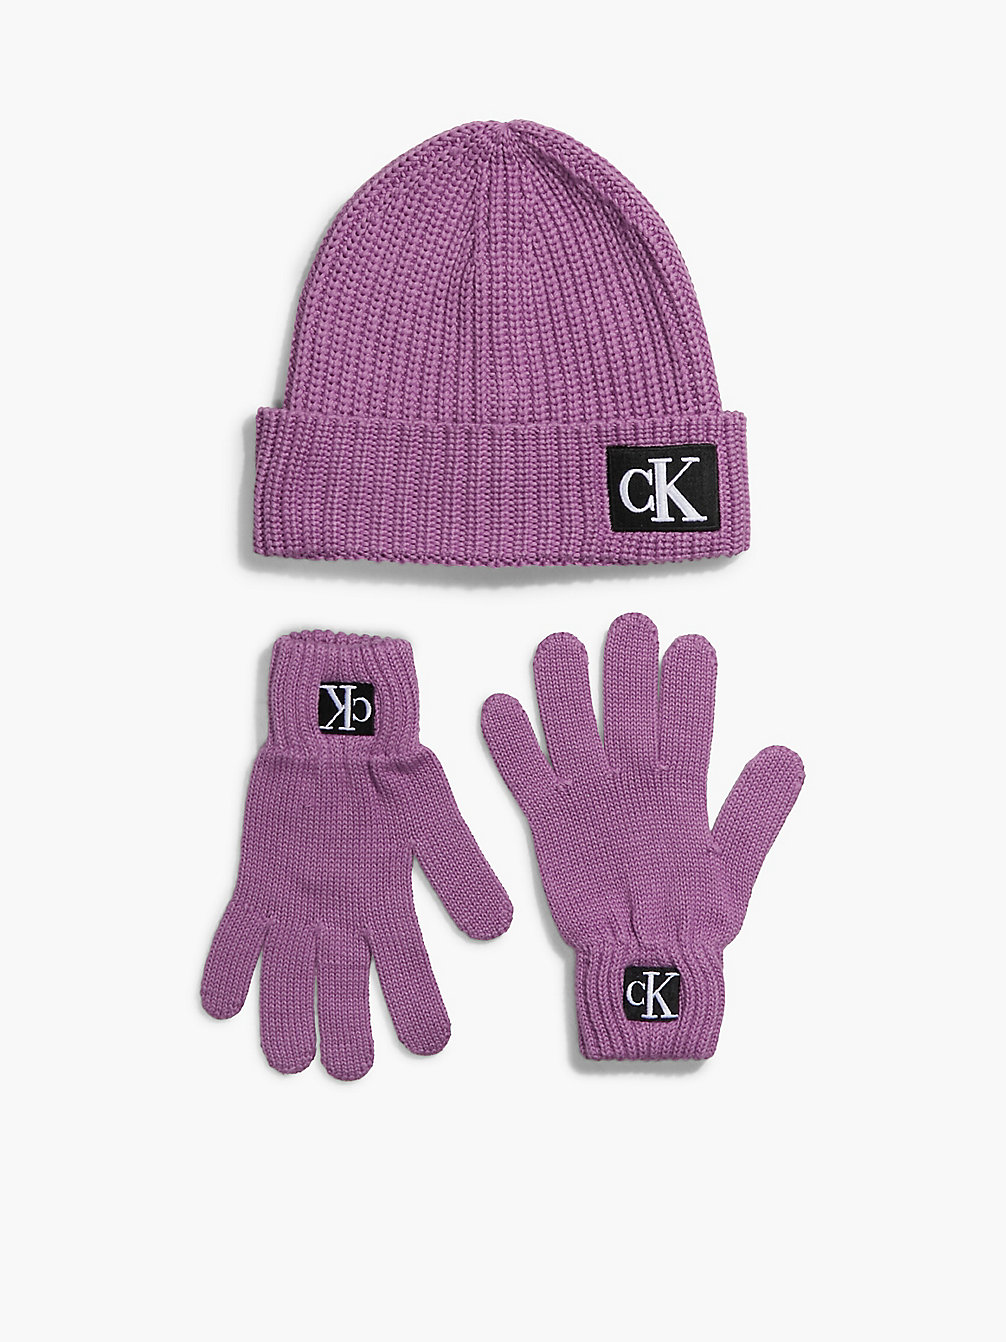 IRIS ORCHID Unisex Beanie And Gloves Set undefined kids unisex Calvin Klein